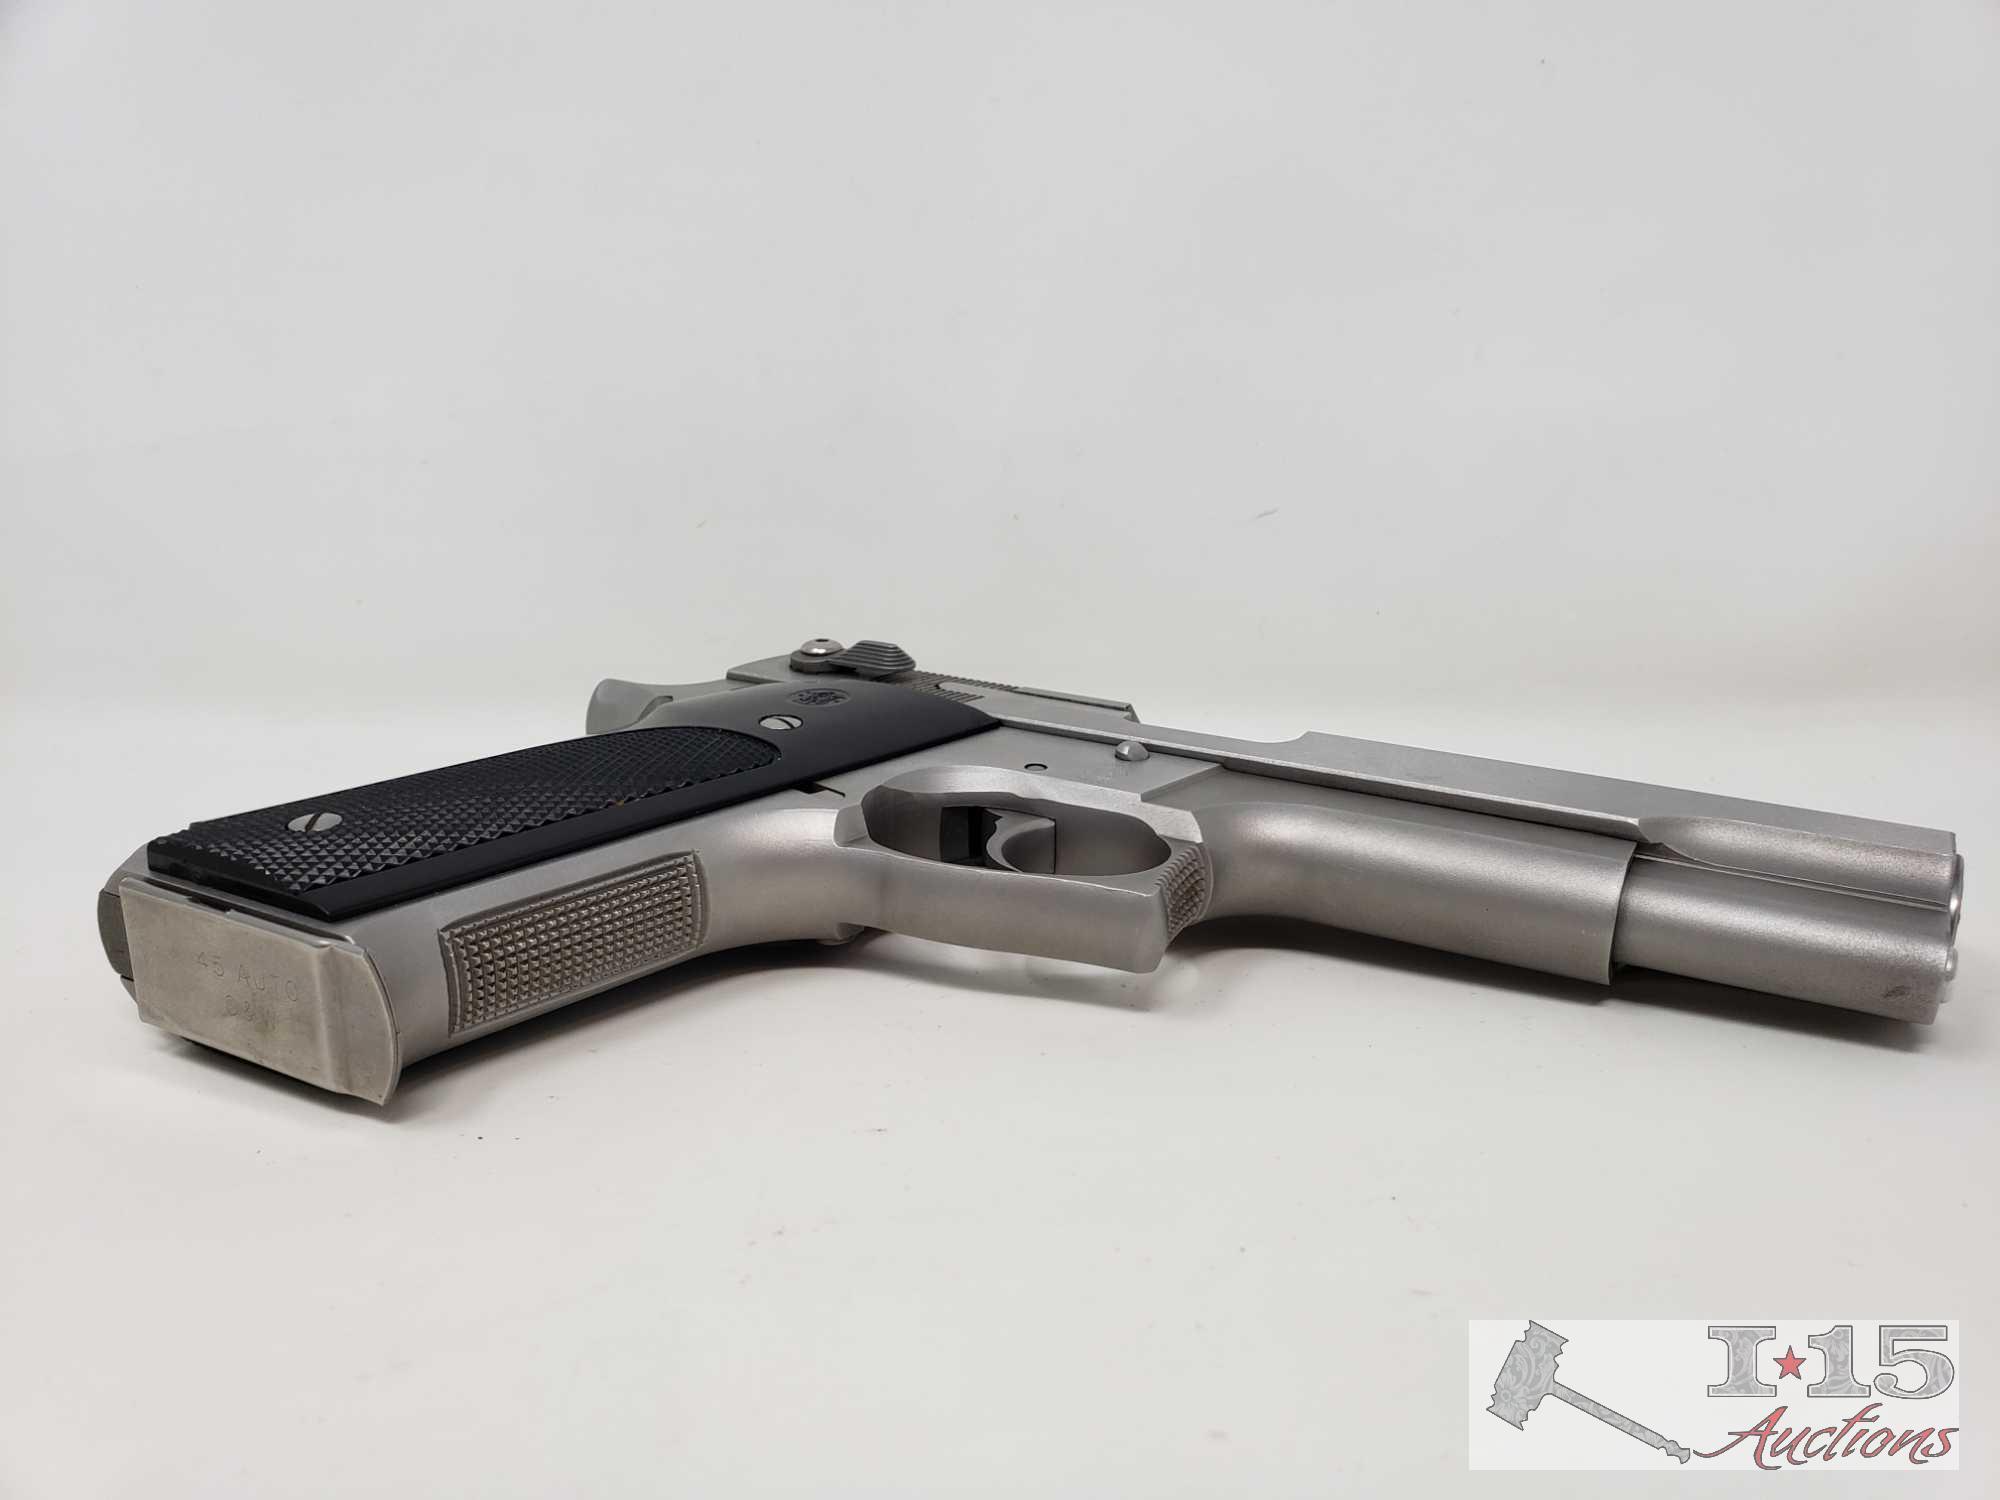 Smith & Wesson Model 645 .45 Auto Semi-Auto Pistol with 8 Round Magazine